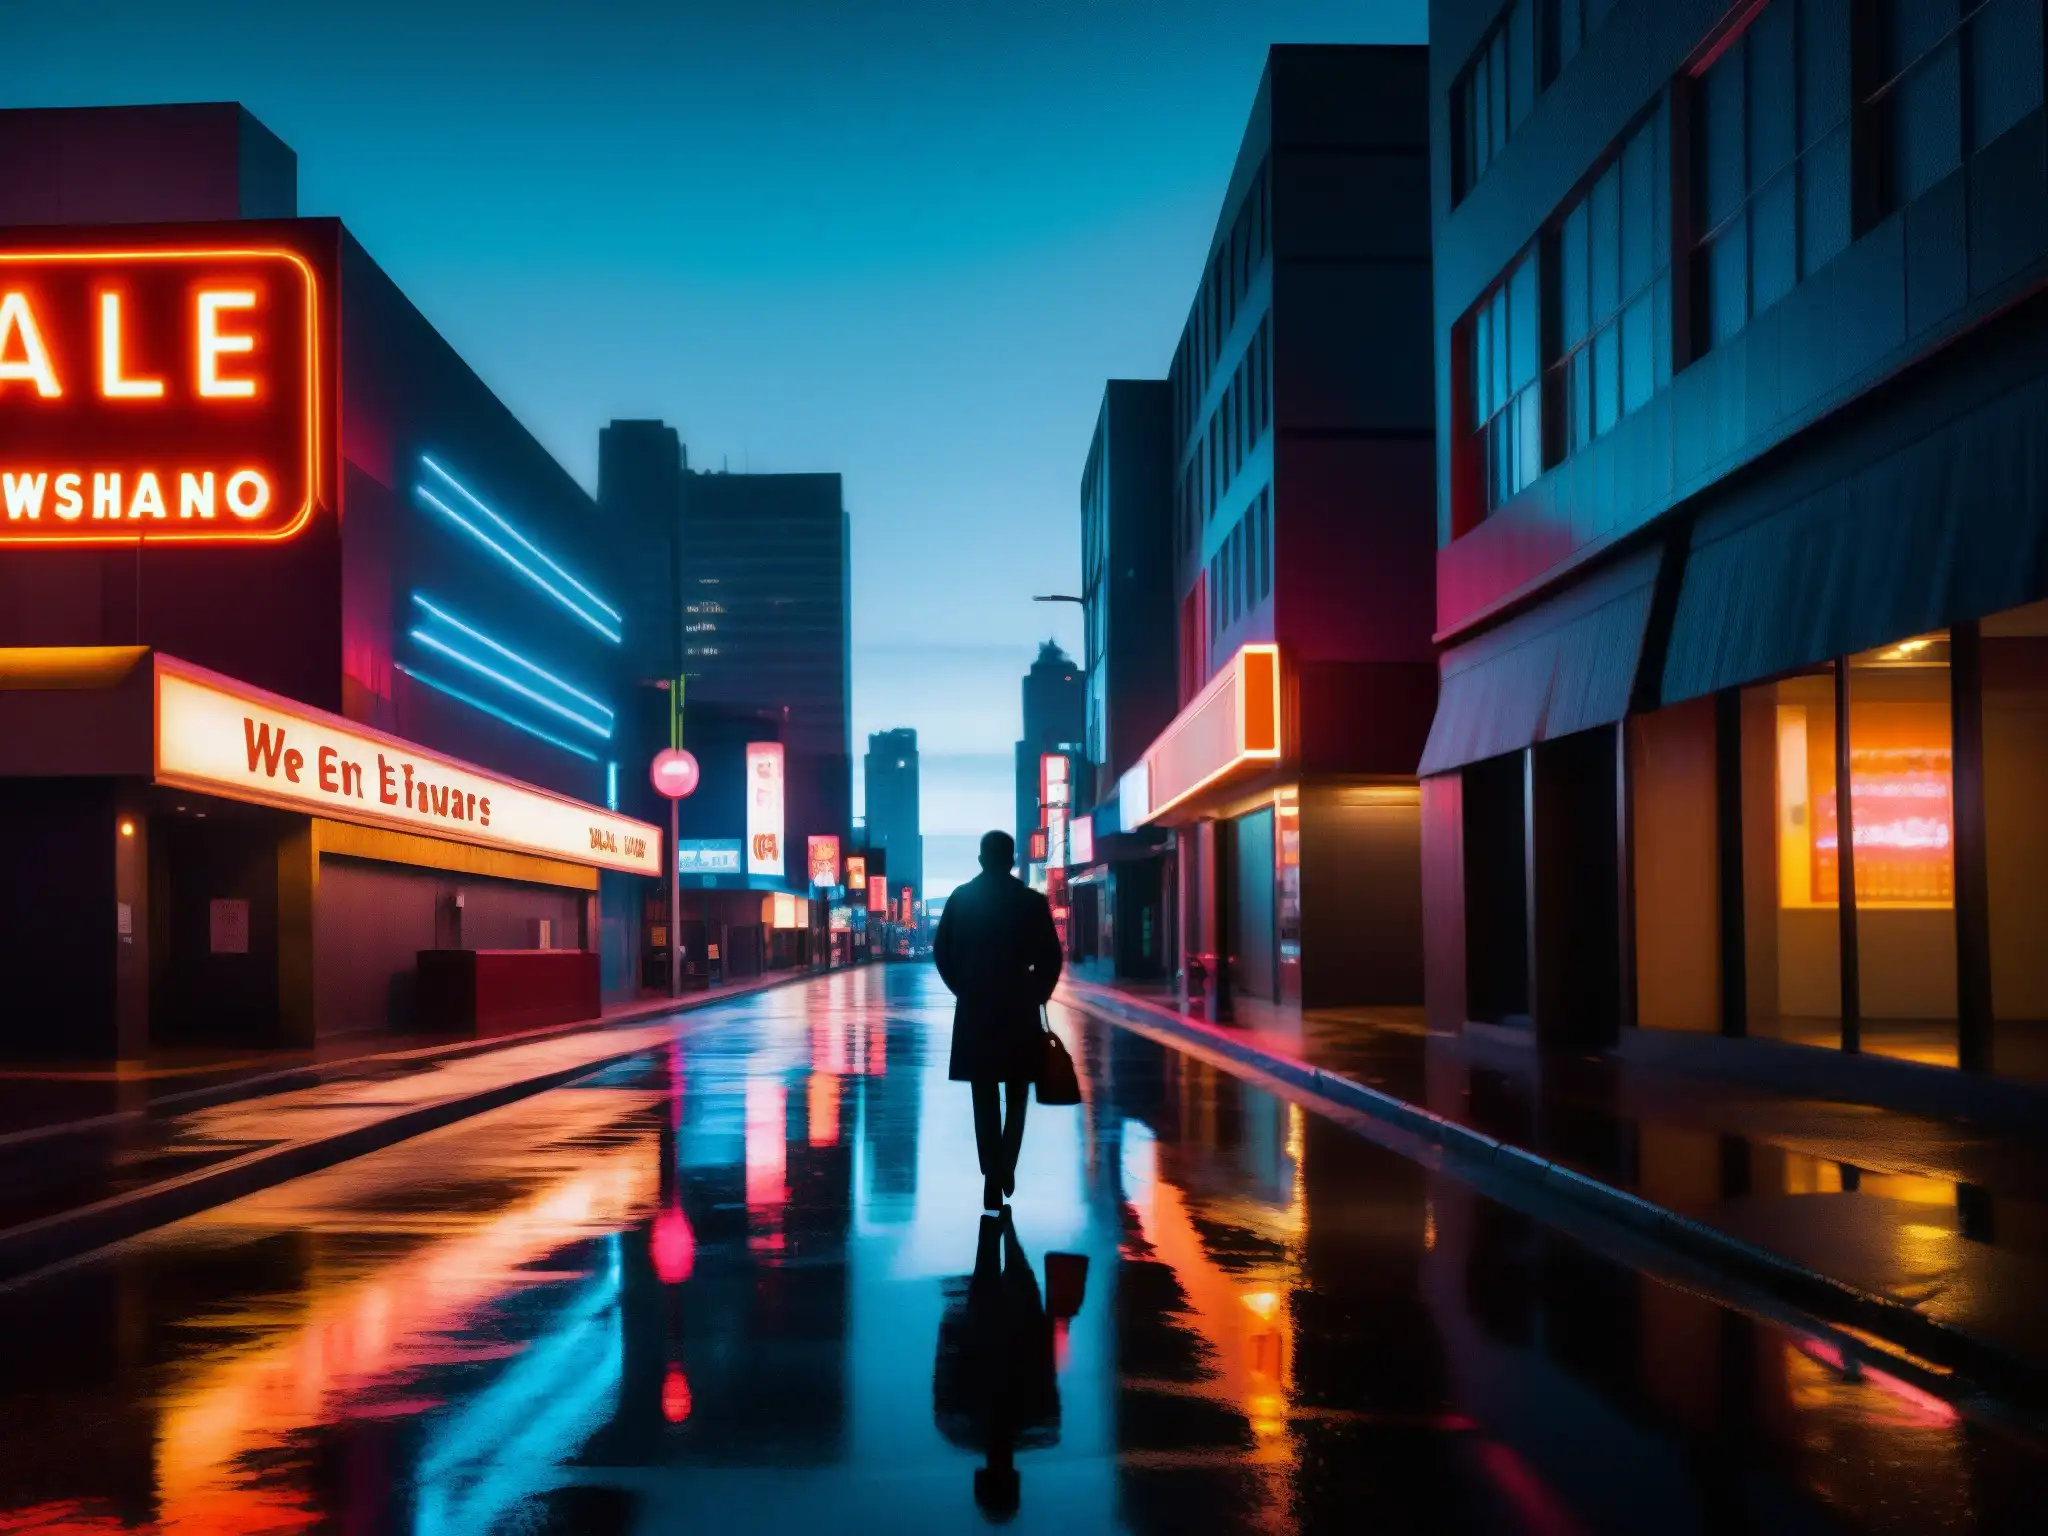 Una solitaria figura camina por una calle urbana oscura y misteriosa, con luces de neón reflejándose en el pavimento mojado